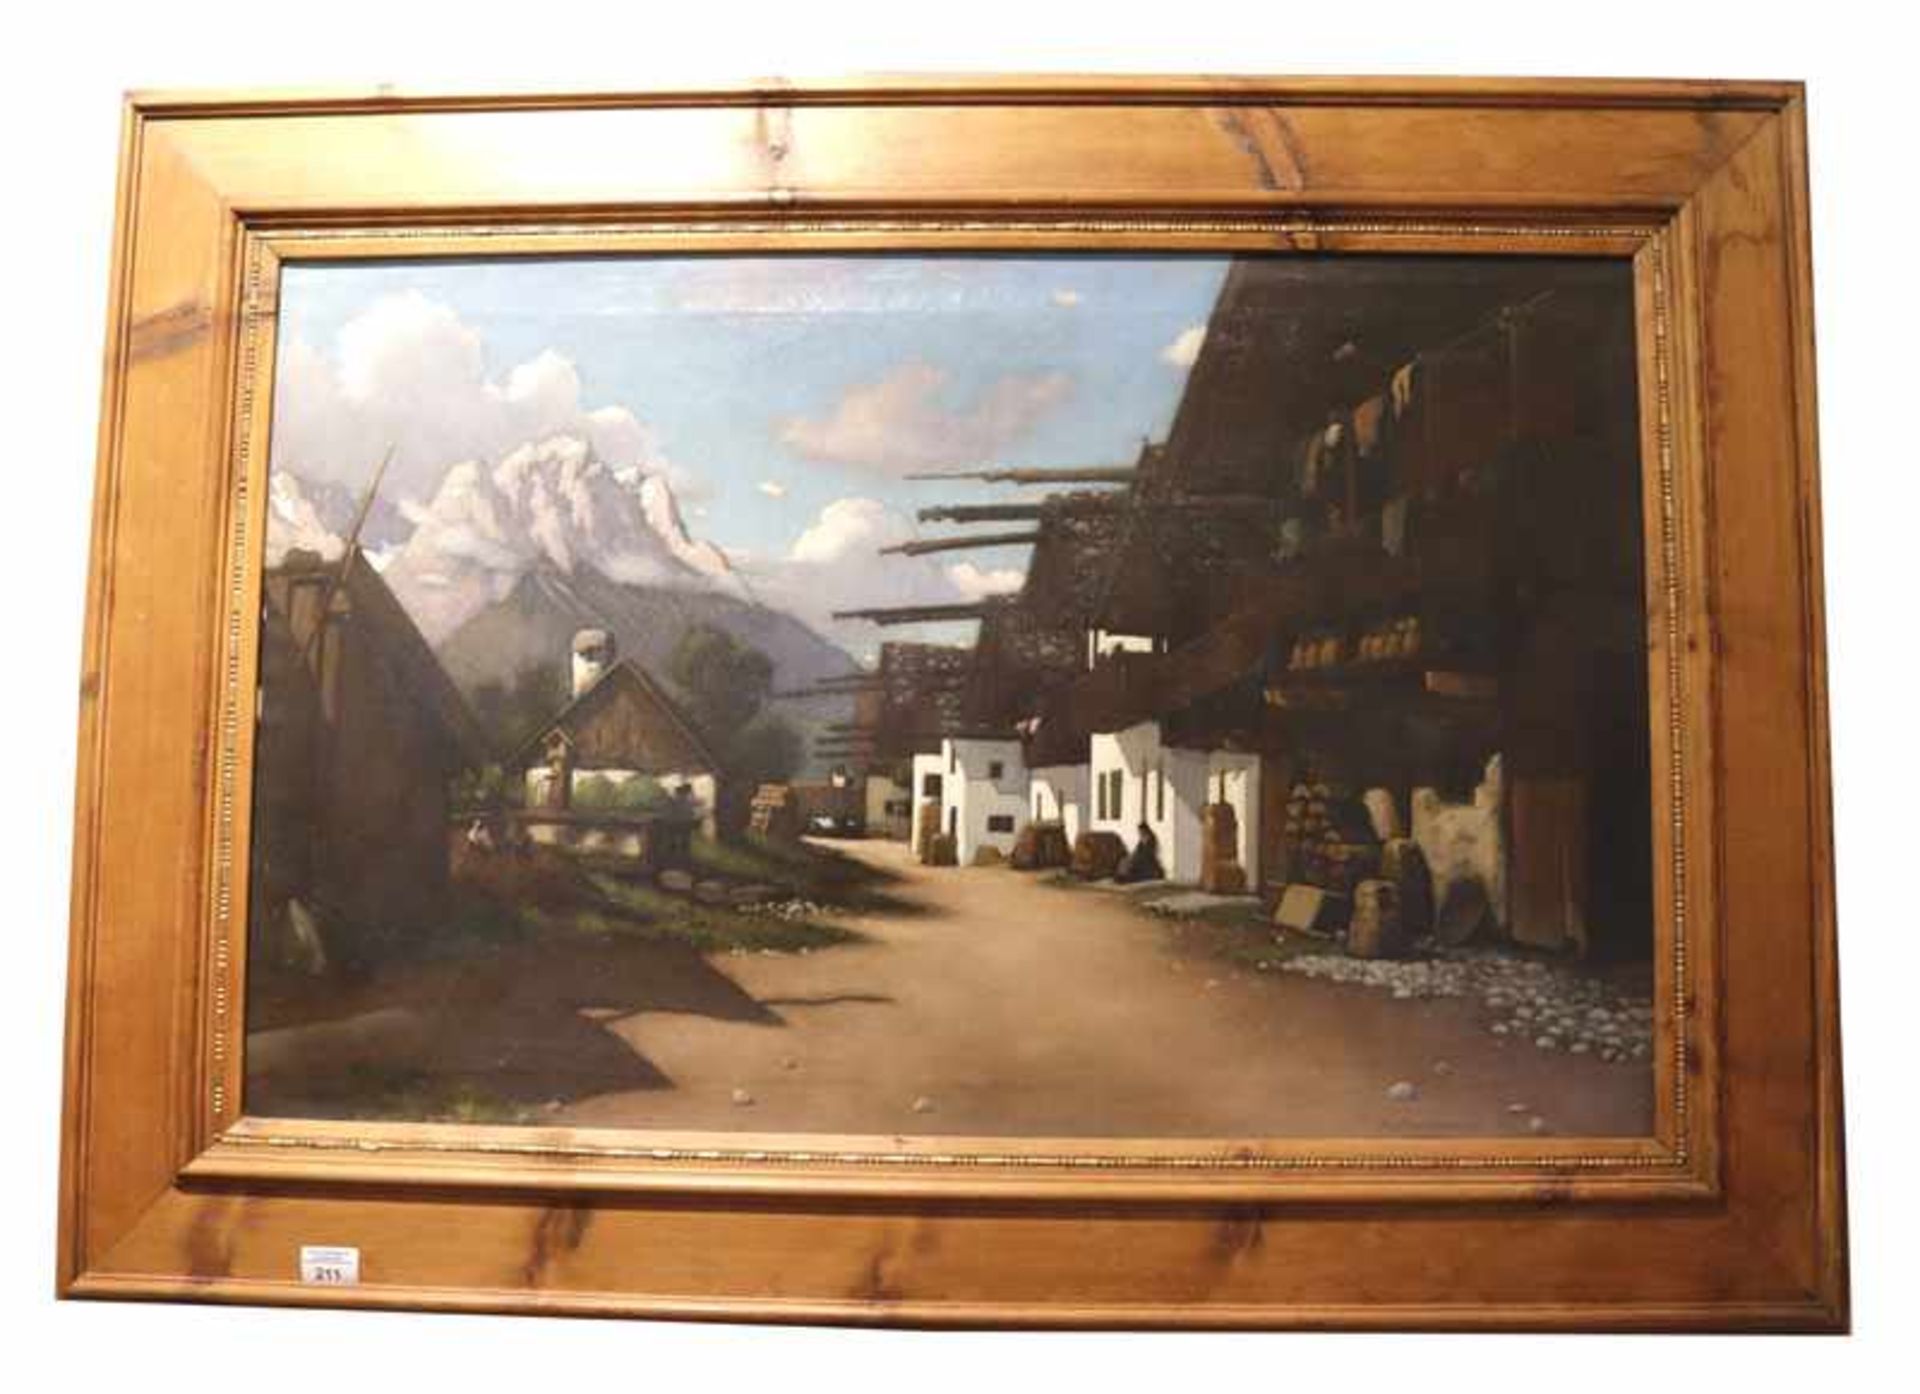 Gemälde ÖL/LW 'Frühlingsstrasse in Garmisch', signiert Aug. (August) Dieffenbacher, * 1858